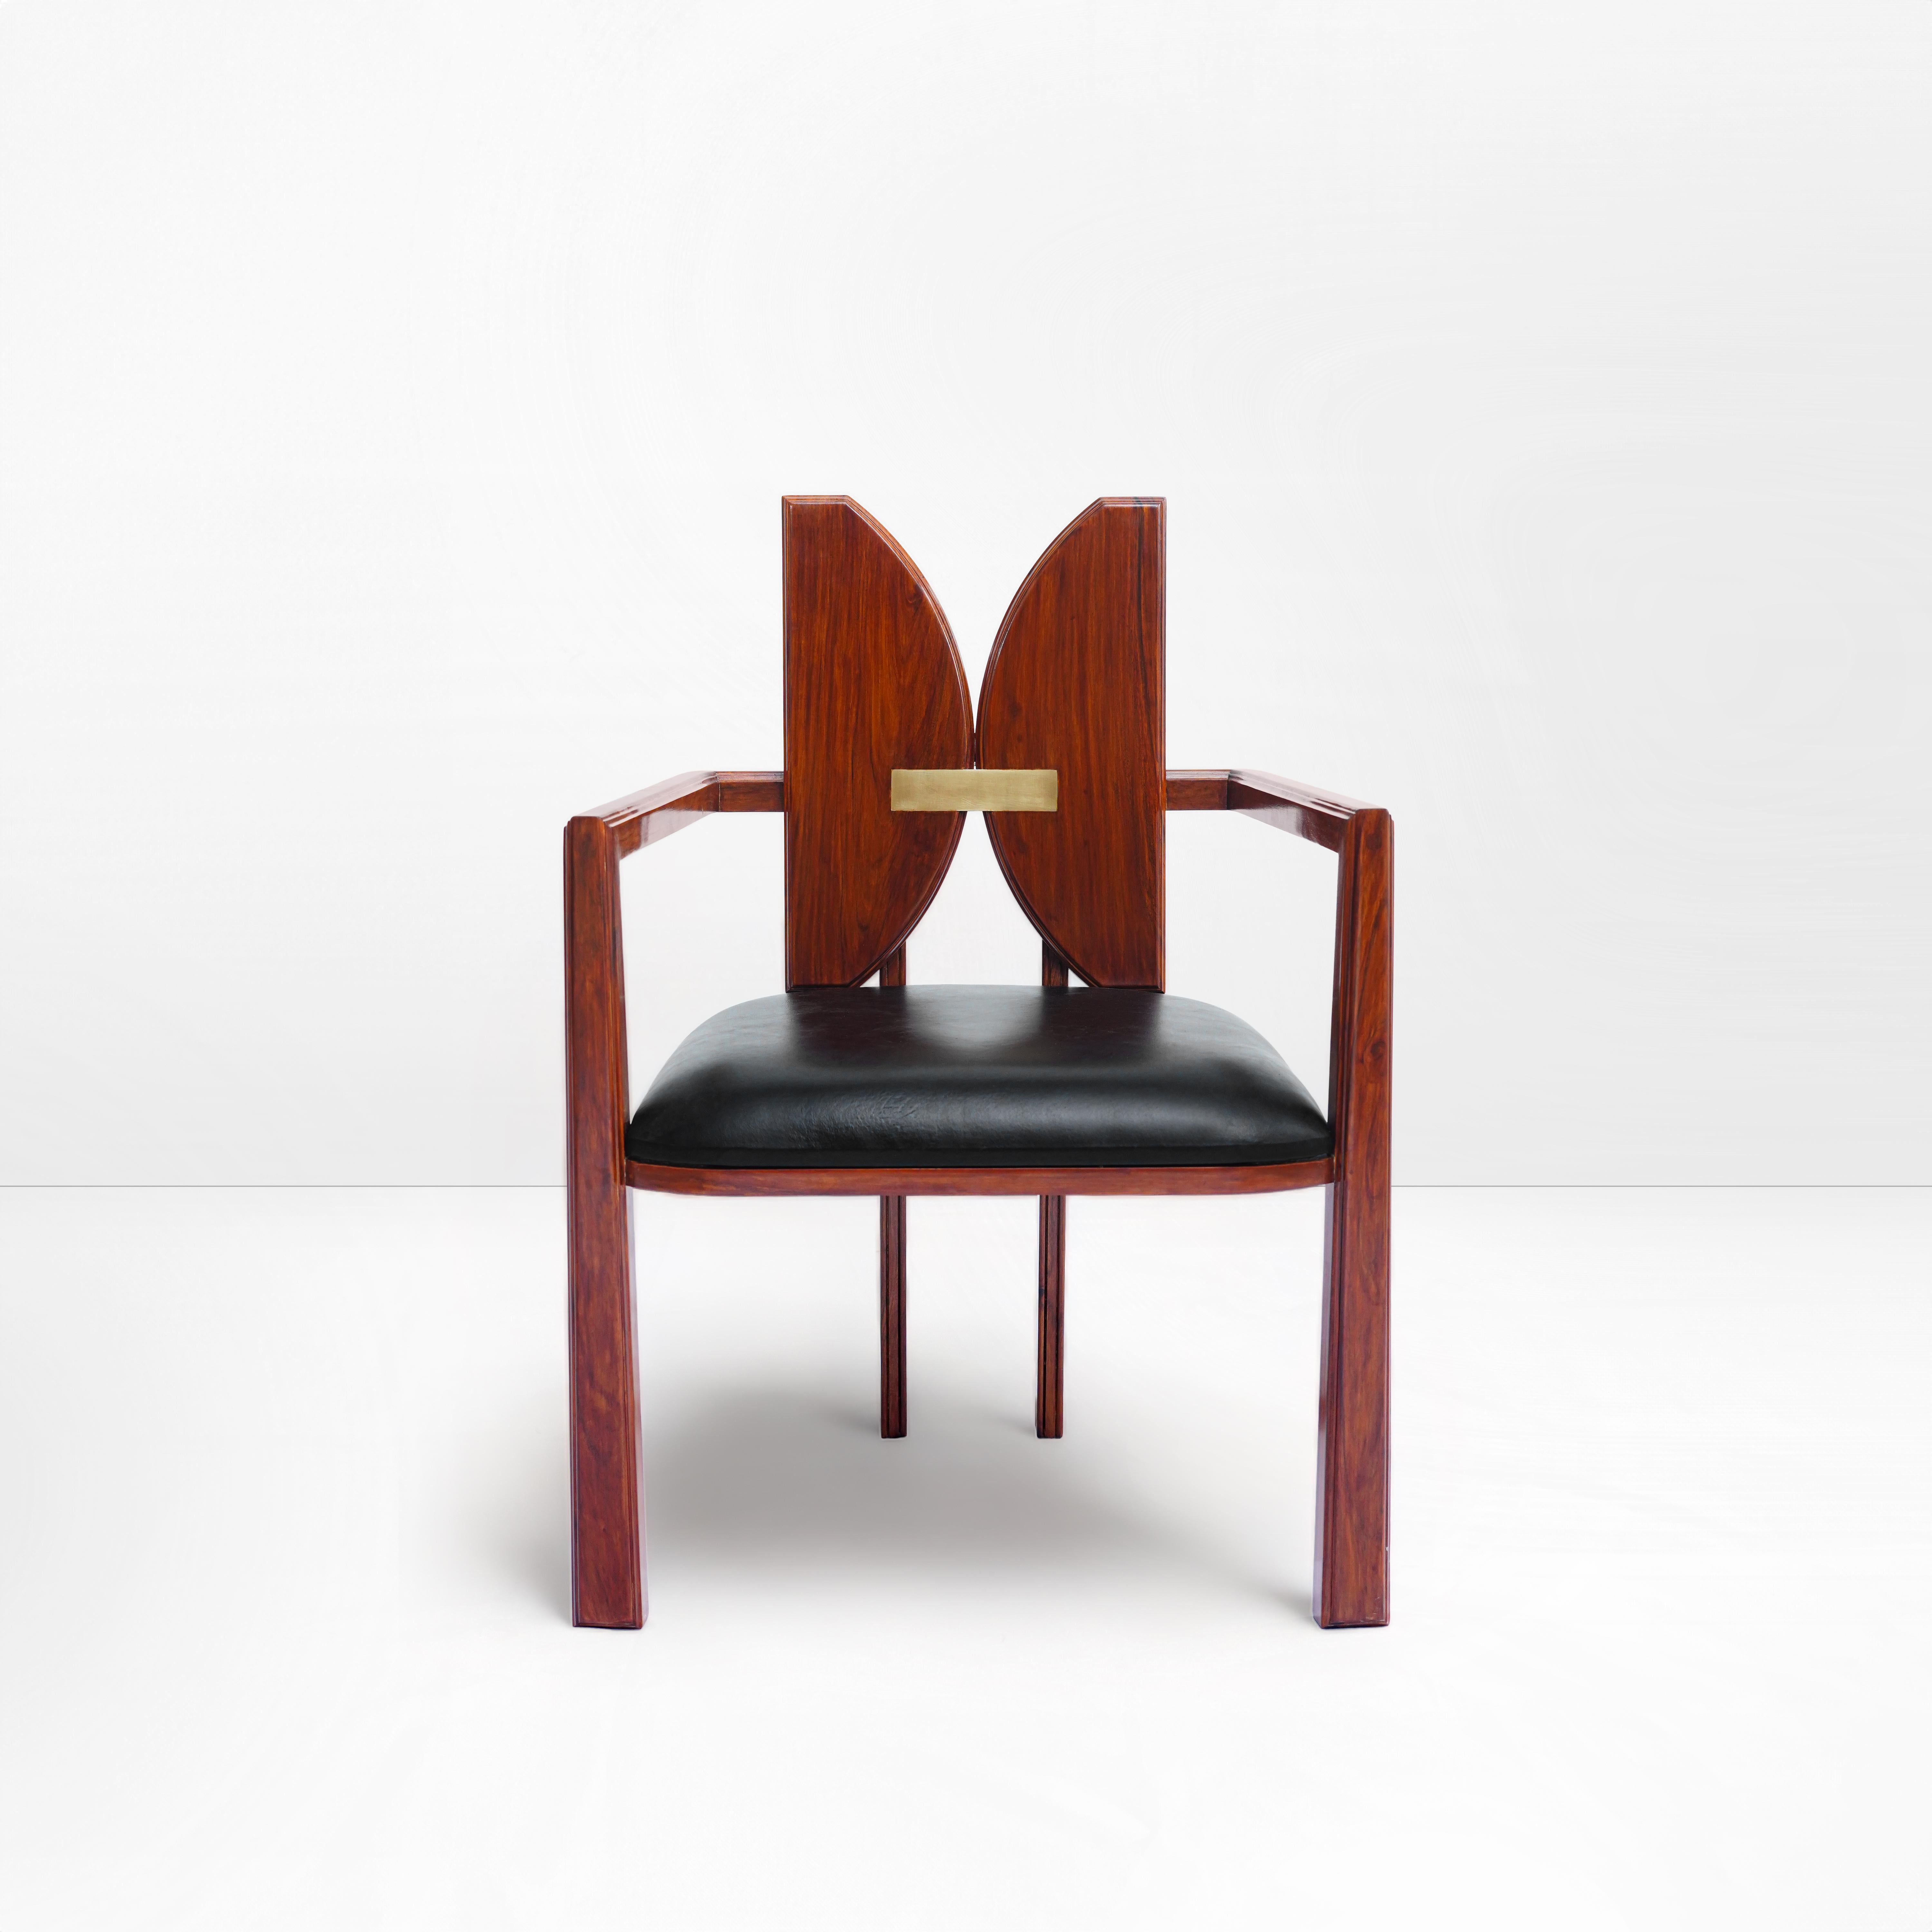 Art Nouveau original, Geometric, transitional style, art nouveau, bold, modern dining chair For Sale